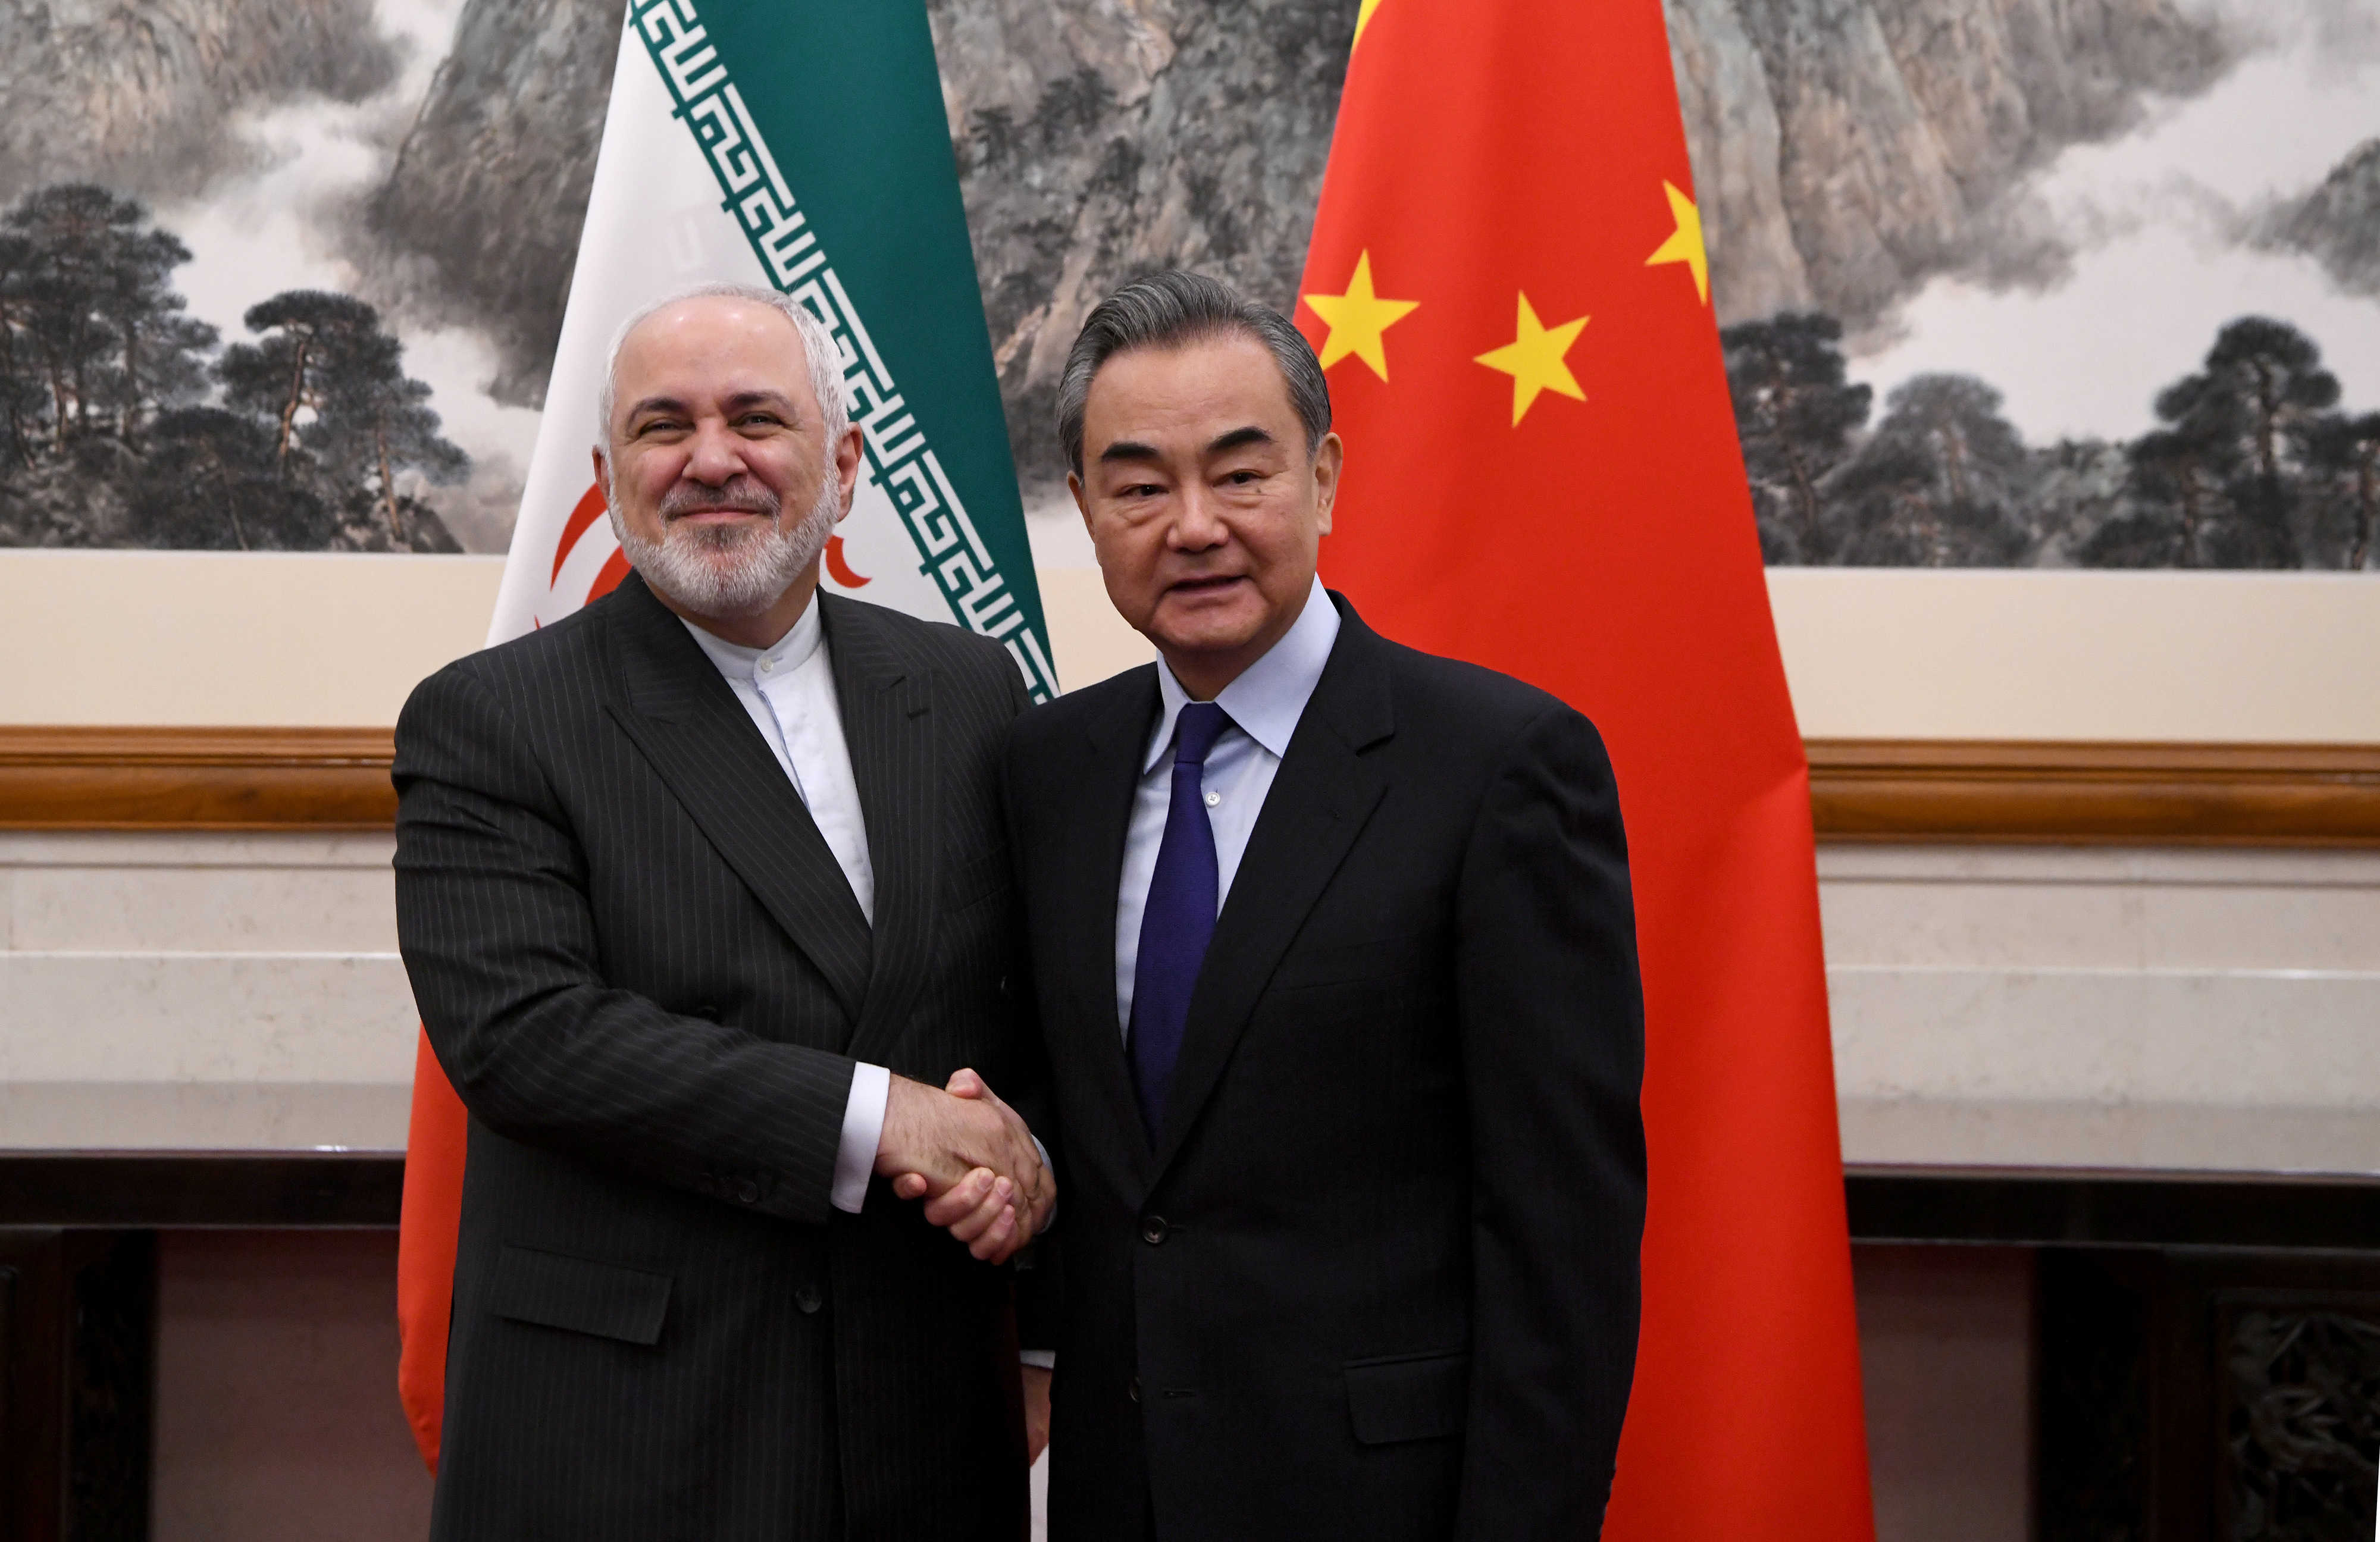 مركز أبحاث أمريكي: الصفقة بين إيران والصين مربحة للجميع